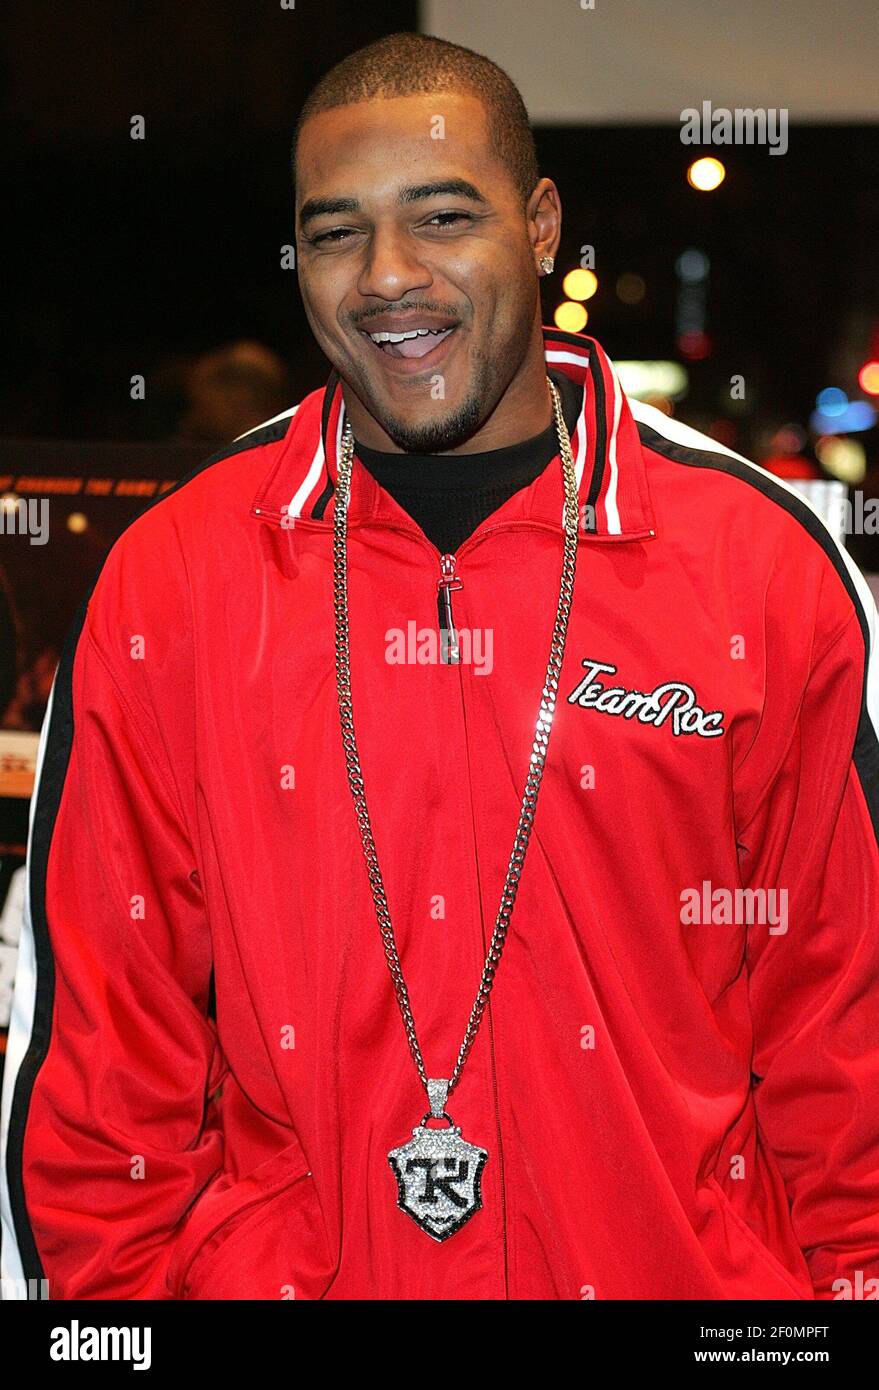 Larry Johnson dei Kansas City Chiefs, presentato il 11 gennaio 2006 a Manhattan, recentemente modellato per un catalogo per la linea di abbigliamento hip-hop di Jay-Z, Rocawear. (Foto di William Gratz/Abaca Press/KRT) Foto Stock